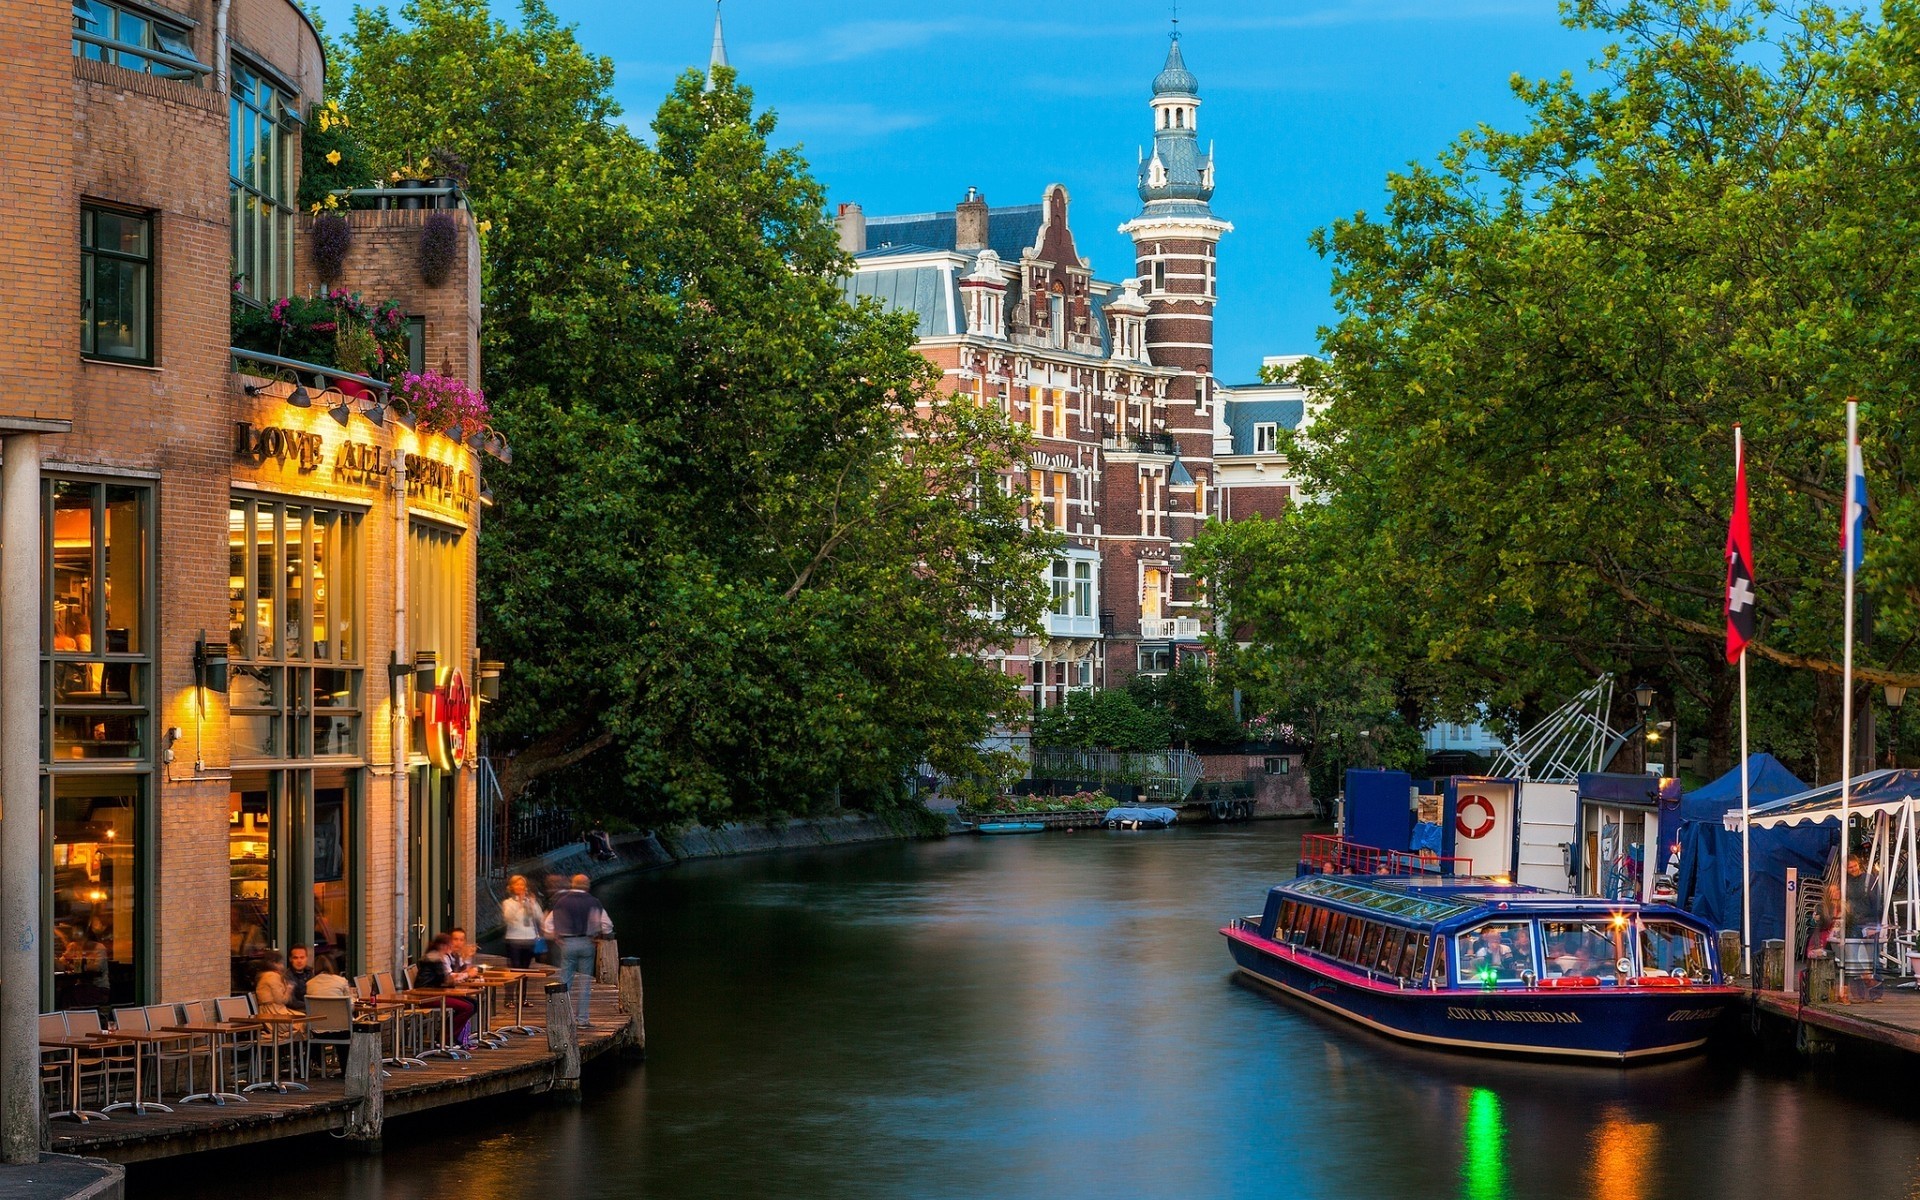 другие города канал архитектура путешествия воды дом город река на открытом воздухе туризм город отражение дом лодка мост городской турист улица амстердам